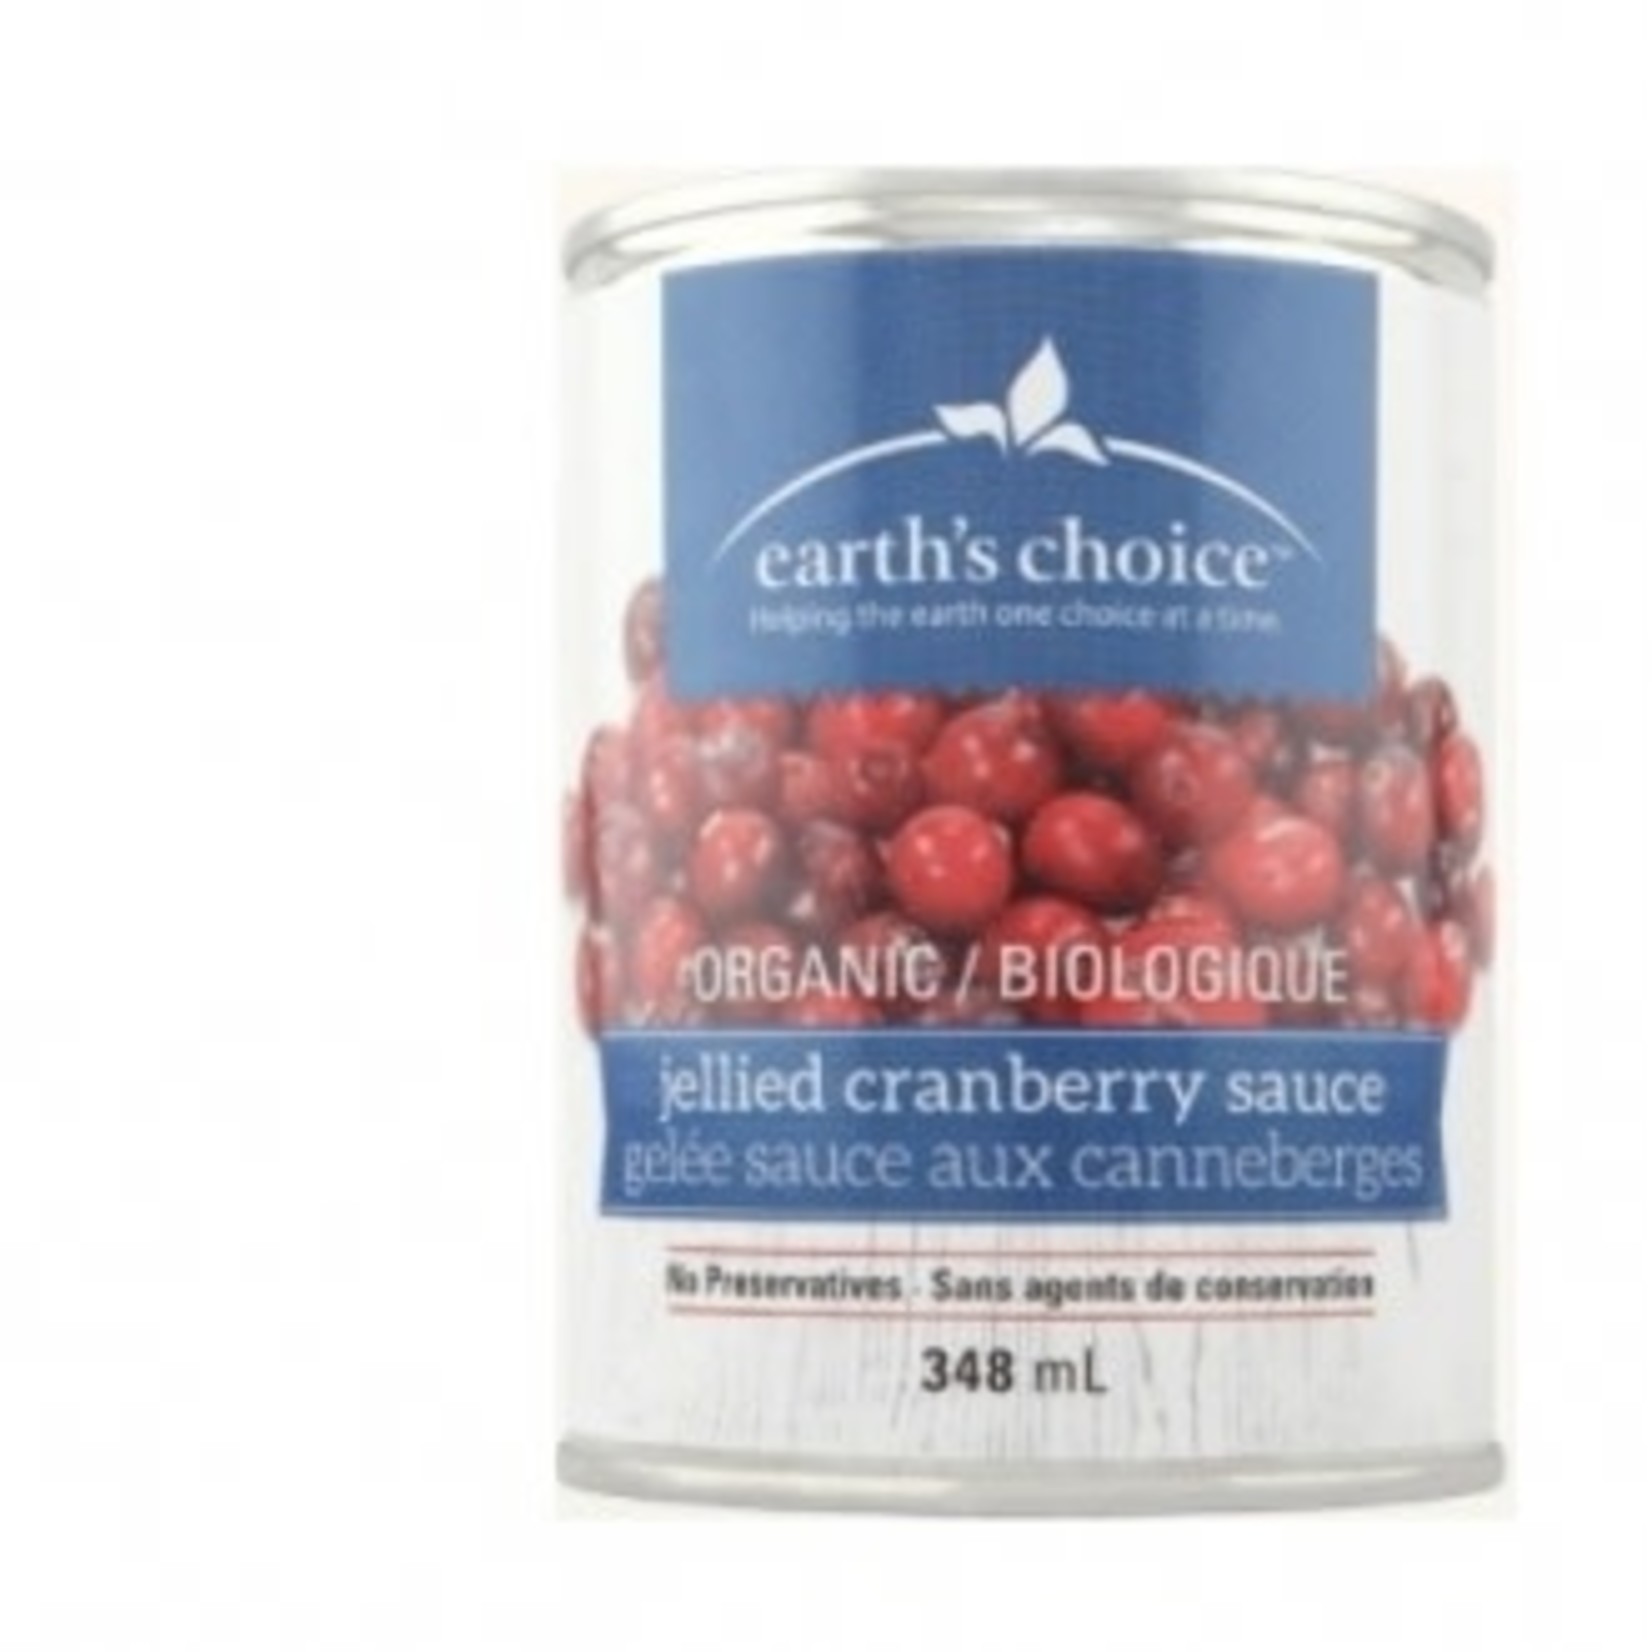 Earth’s Choice Earth’s Choice Jellied Cranberry Sauce 348ml